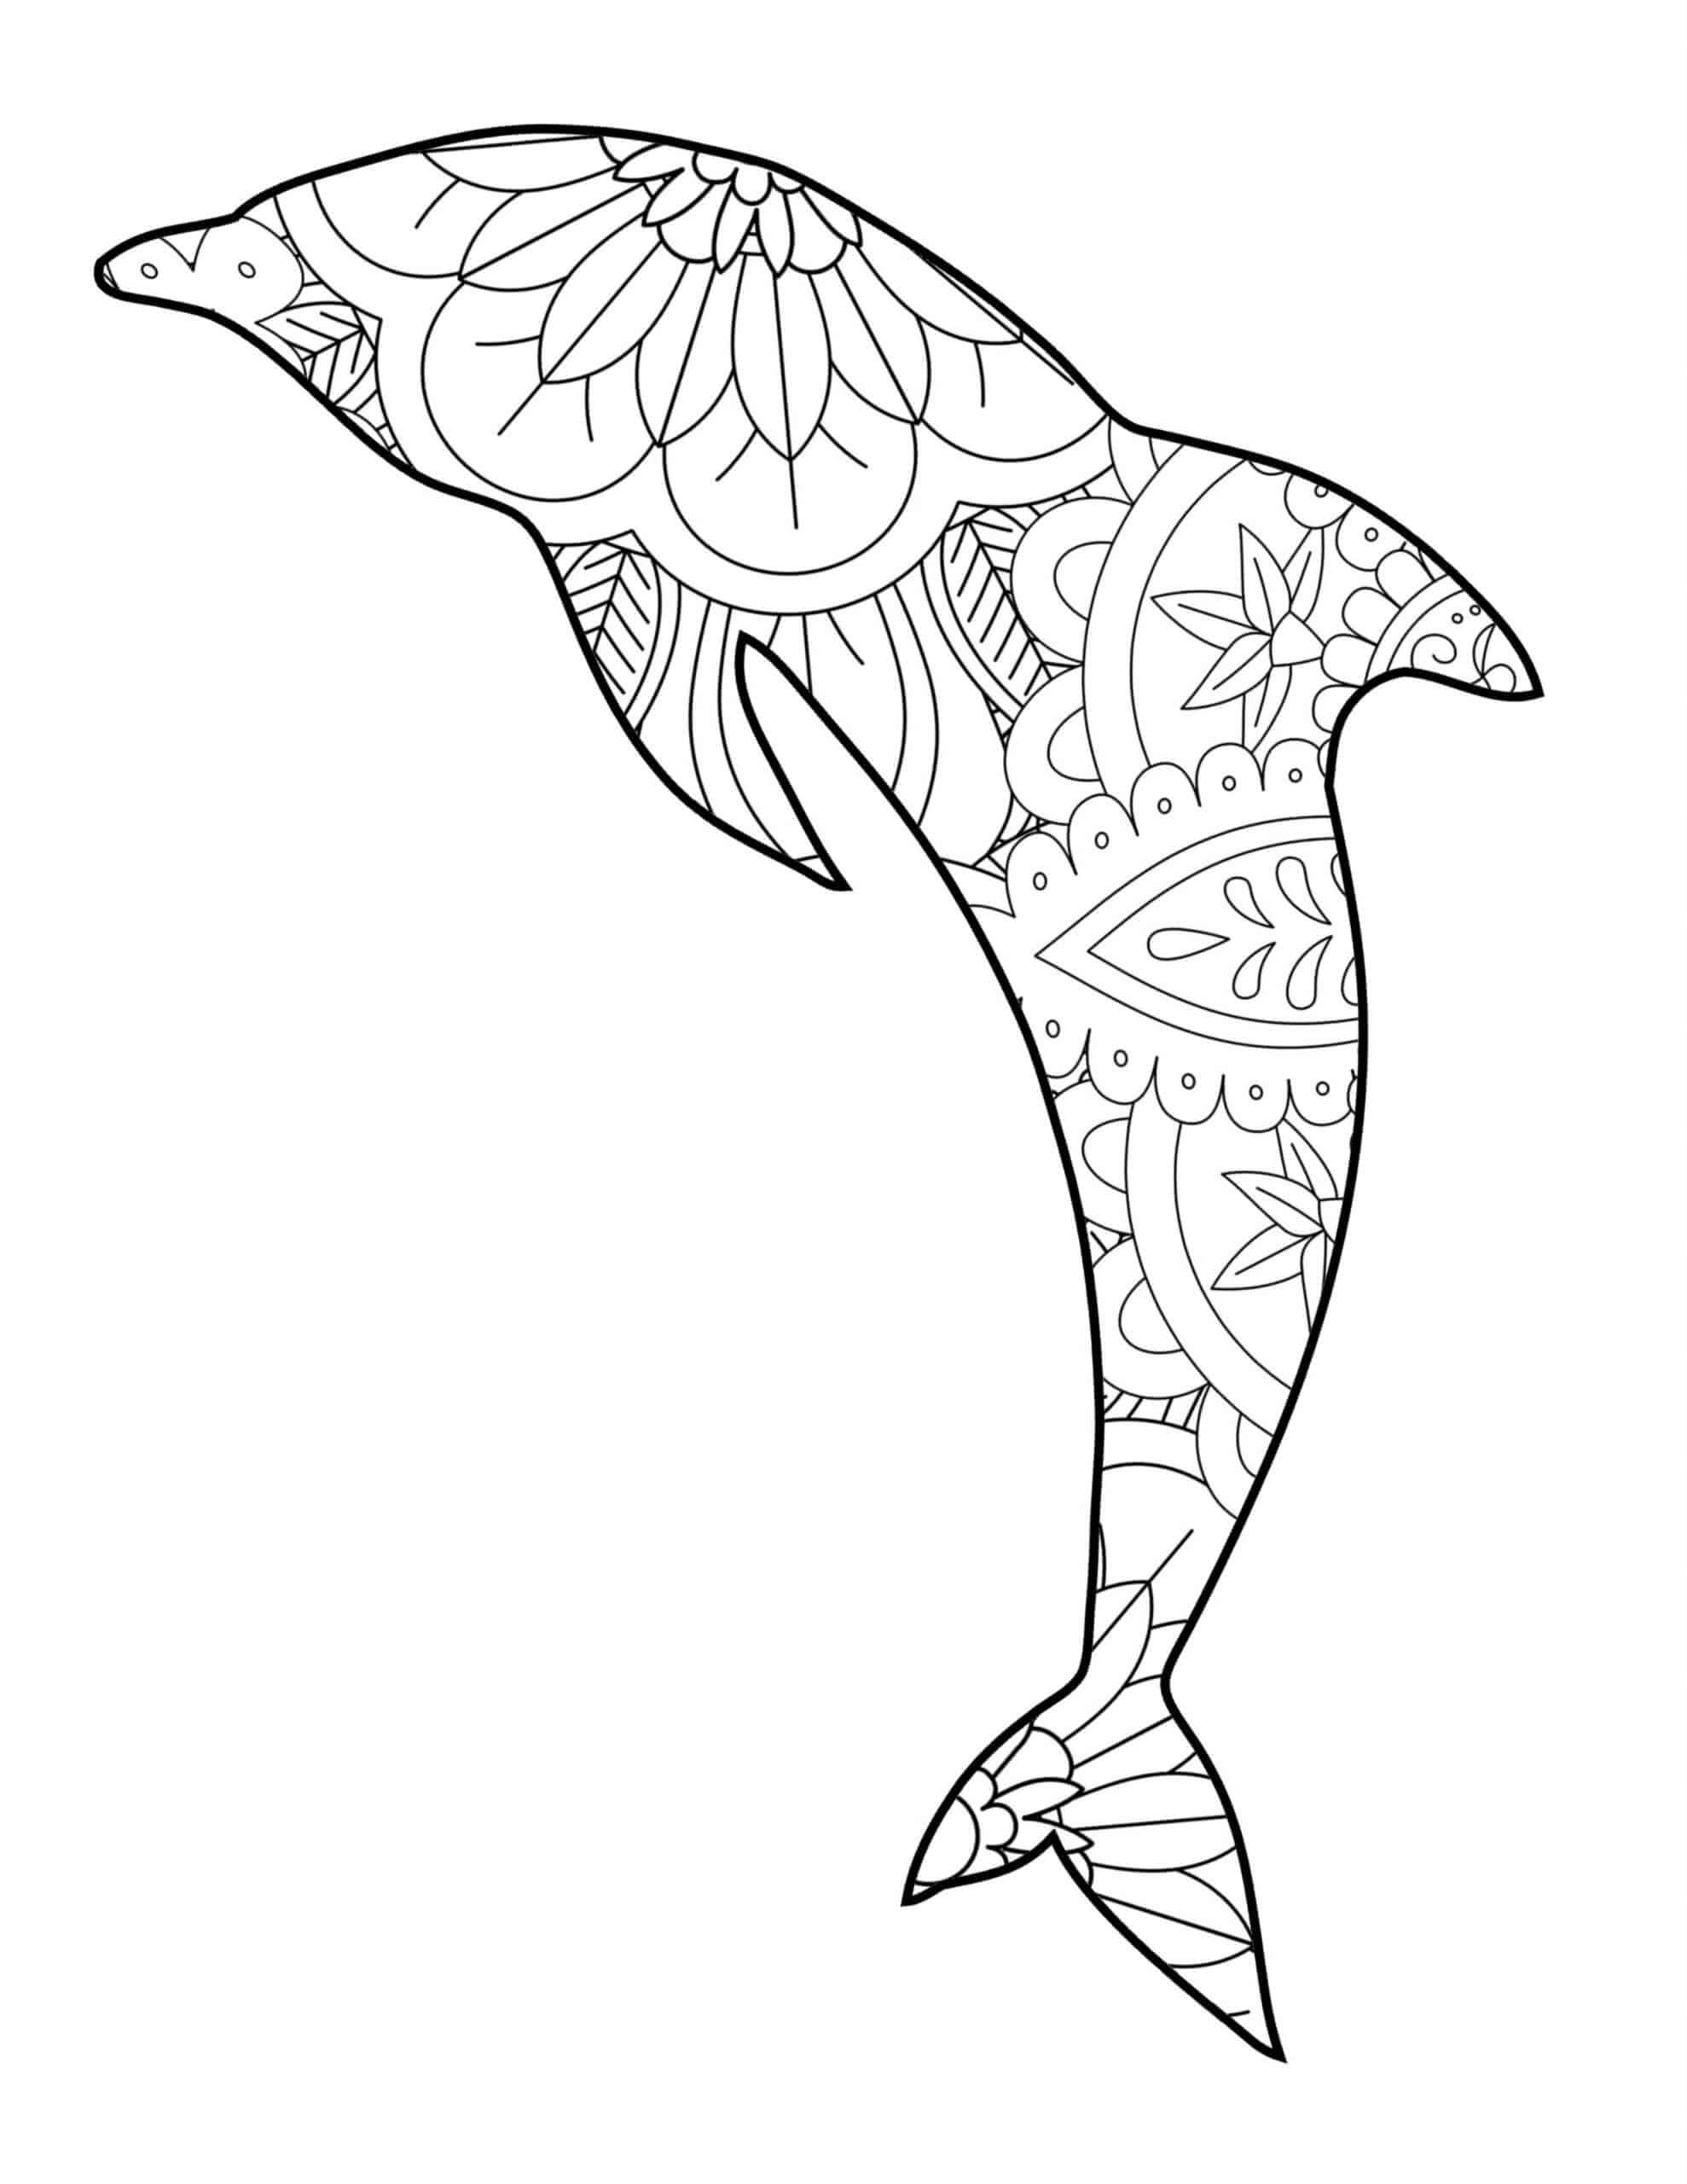 Mandala Dolphin Coloring Page - Sheet 3 Mandalas